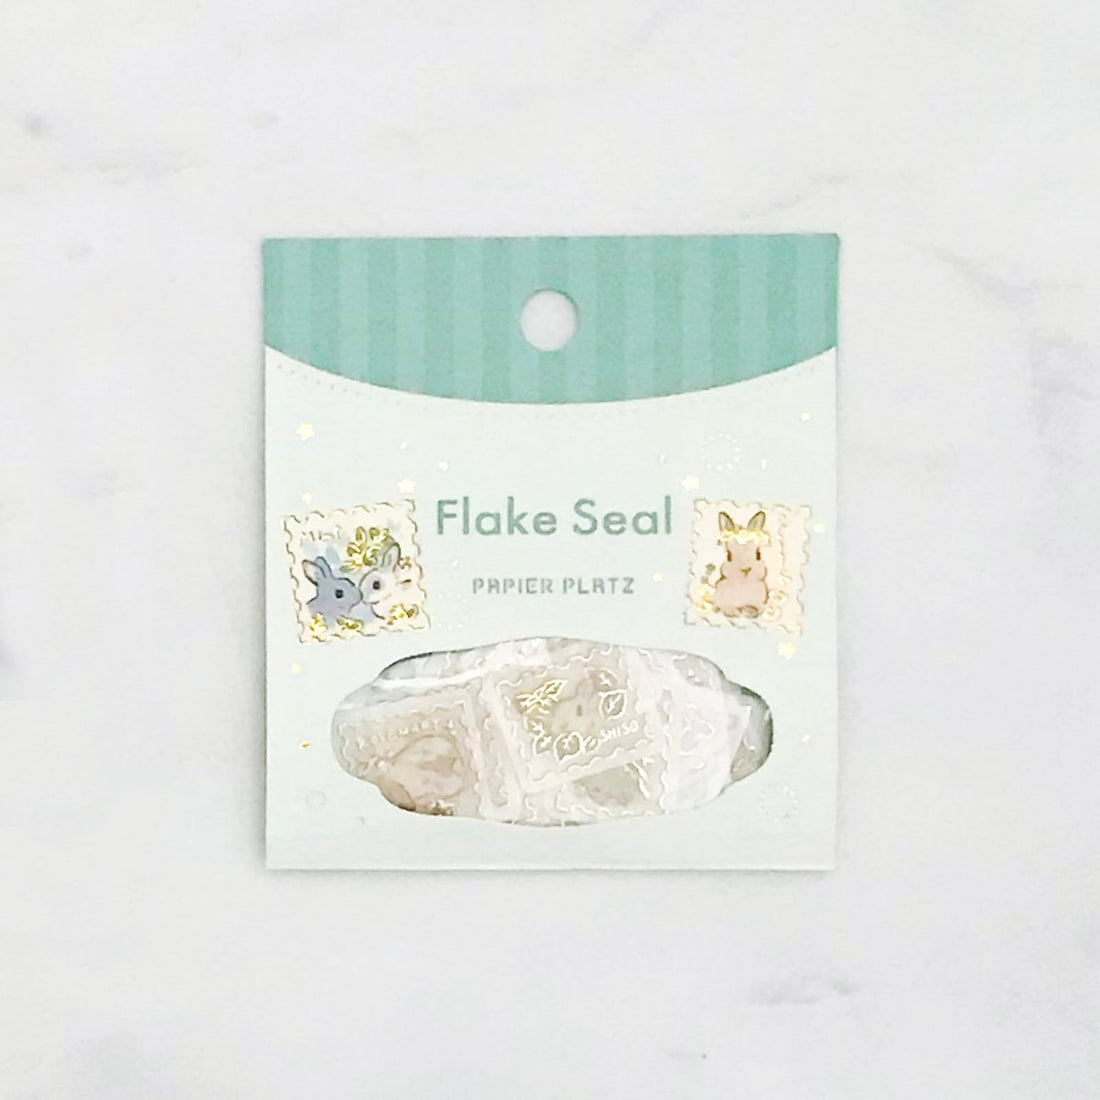 Moriyama Schinako Flake Stickers - Rabbit and Flower Stamp - Techo Treats